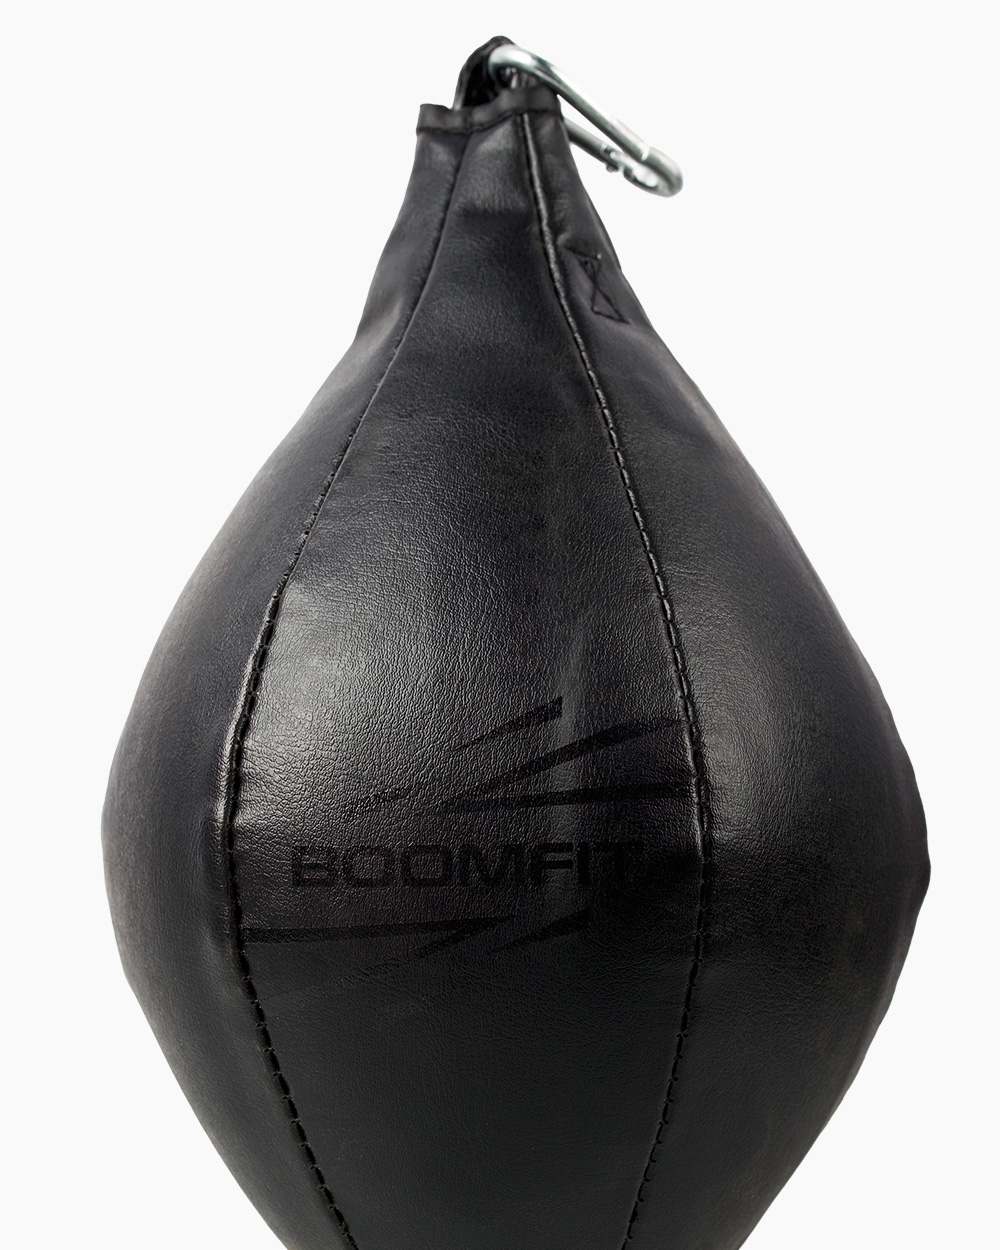 Pera De Boxeo Black Edition Boomfit